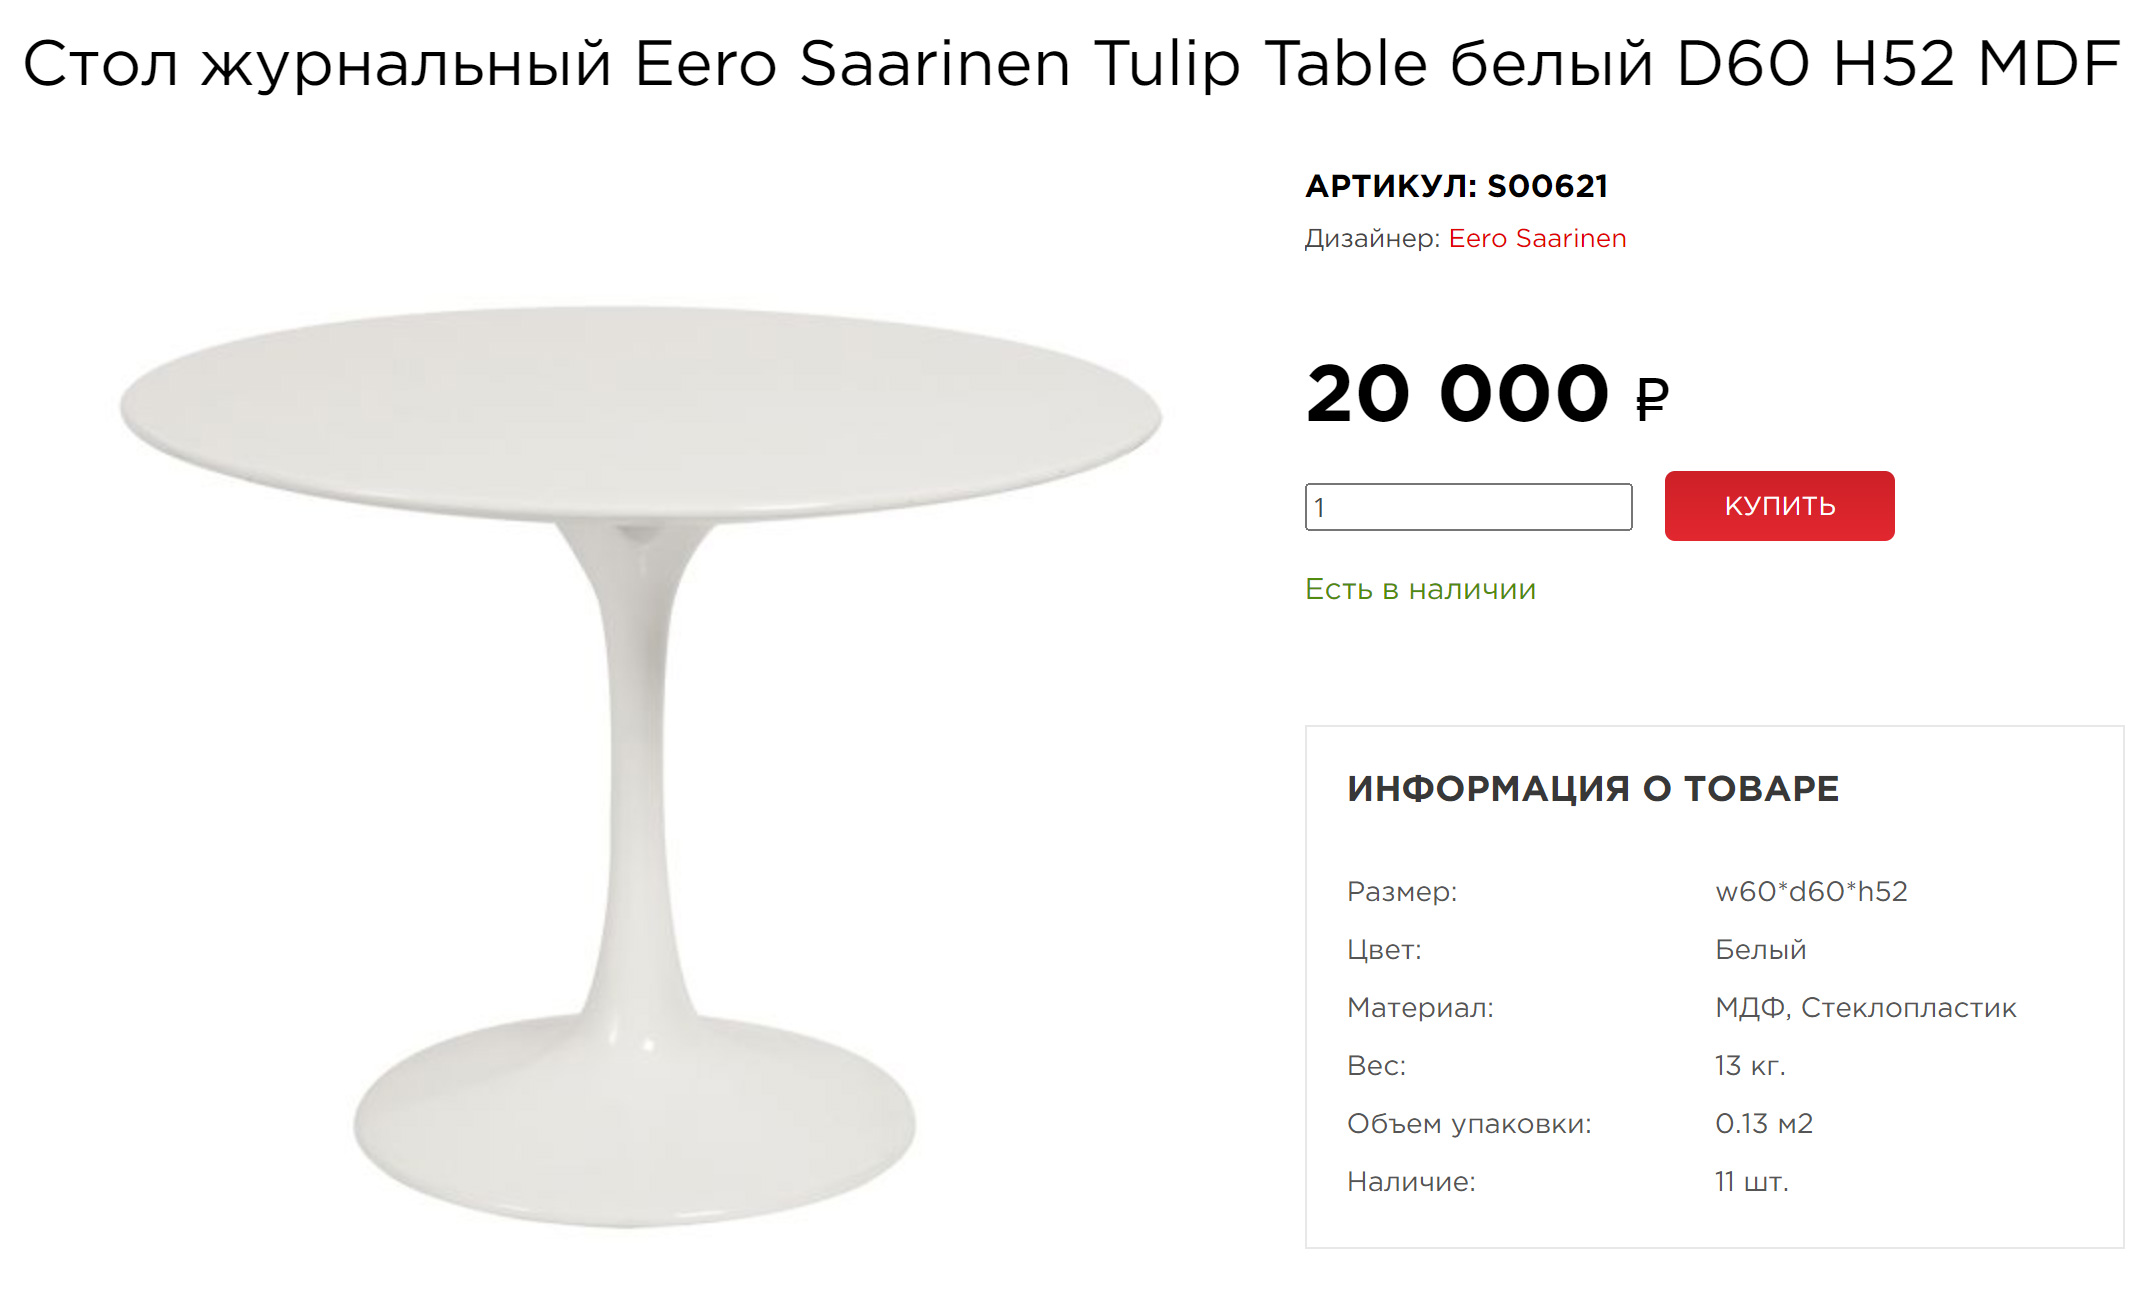 Этот стол — самый близкий к оригинальному из всех, что я нашла в российском сегменте. Он сделан из стеклопластика, но столешница не деревянная, а из МДФ. Ножка внизу цельная, без шва, как у оригинала. Источник: soho⁠-⁠design.pro